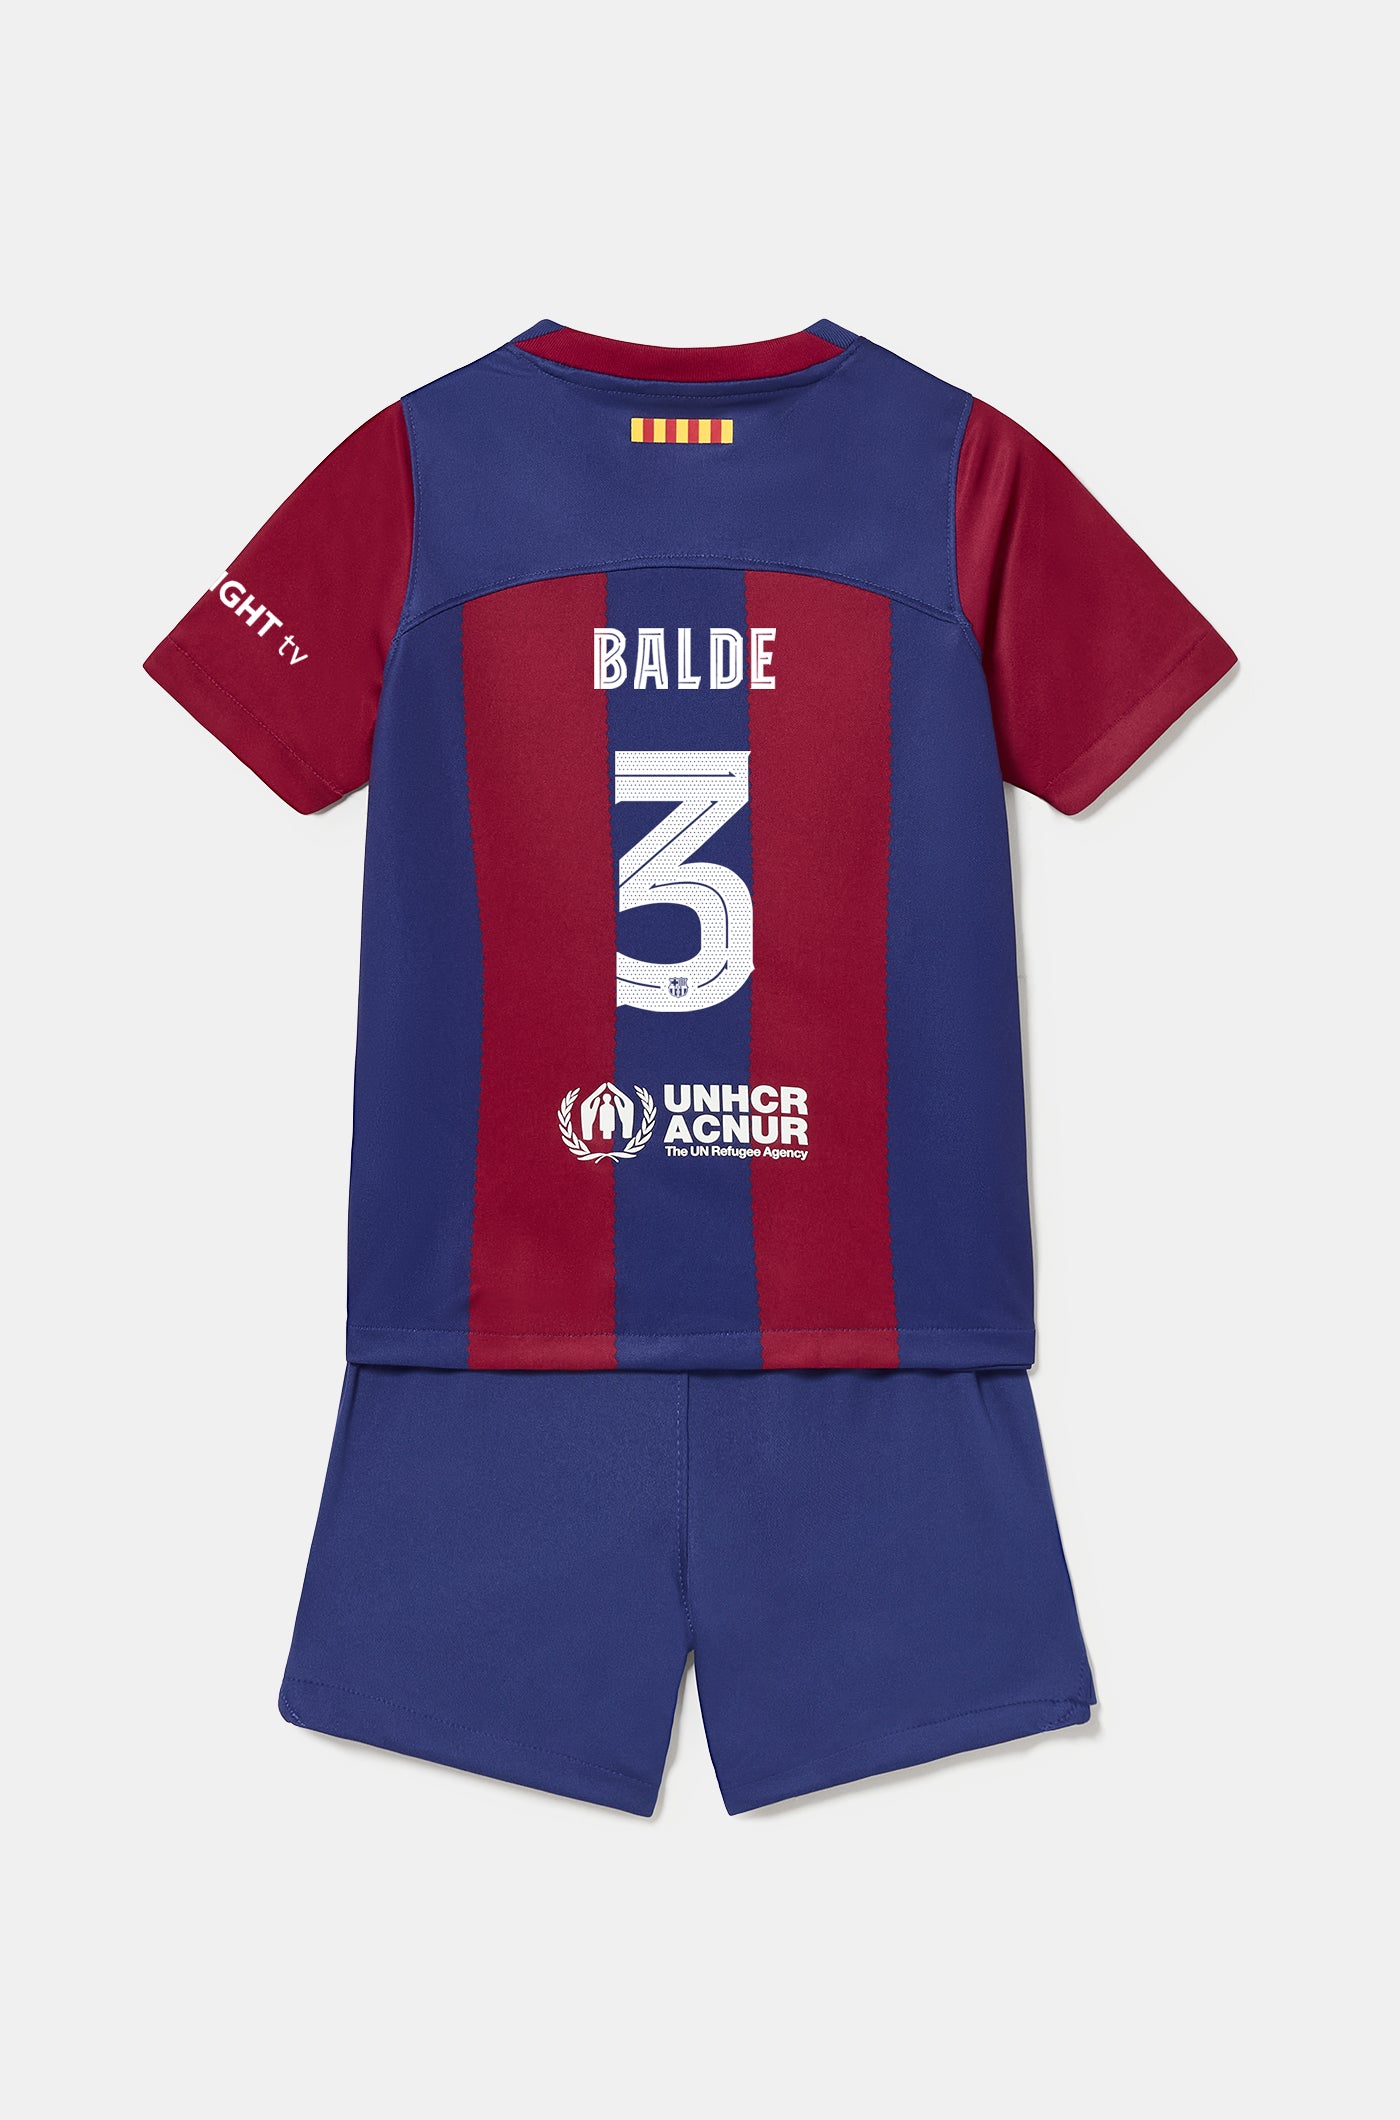 Conjunt primer equipament FC Barcelona 23/24 - Nen/a petit/a - BALDE